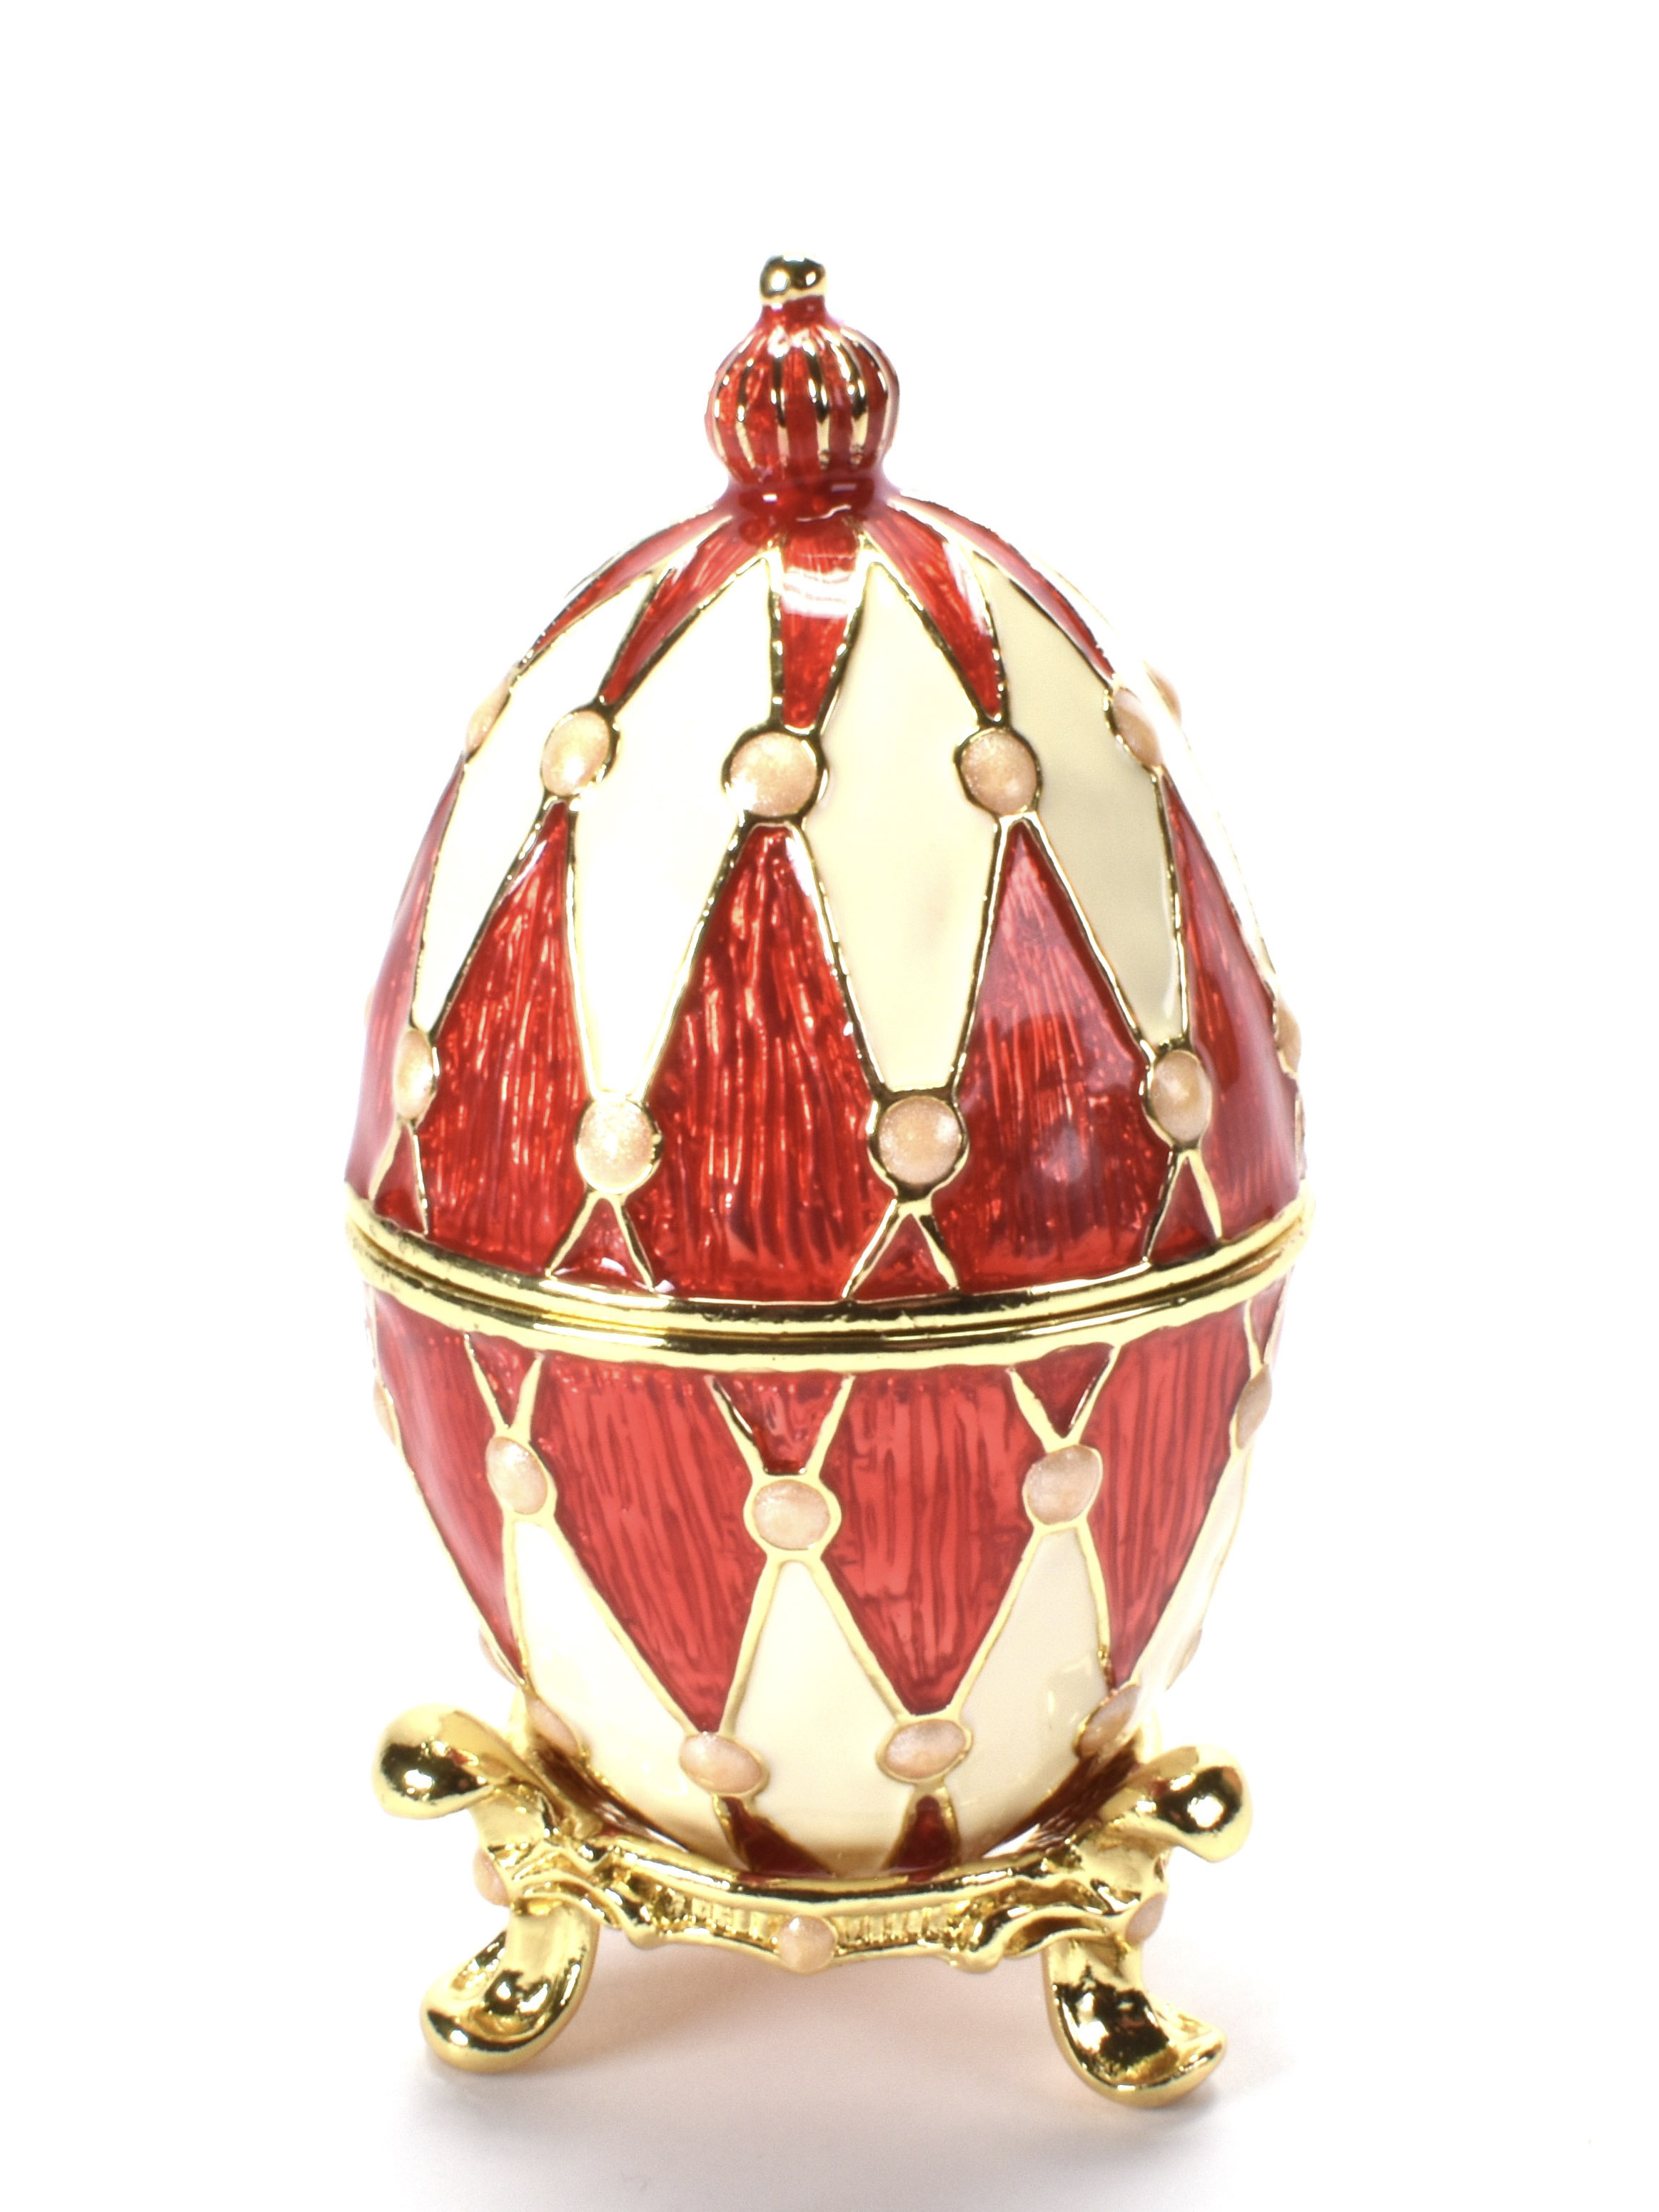 MOEDERDAGTIP ....Veiling van eieren in Fabergé stijl, van de Czars Collectie,